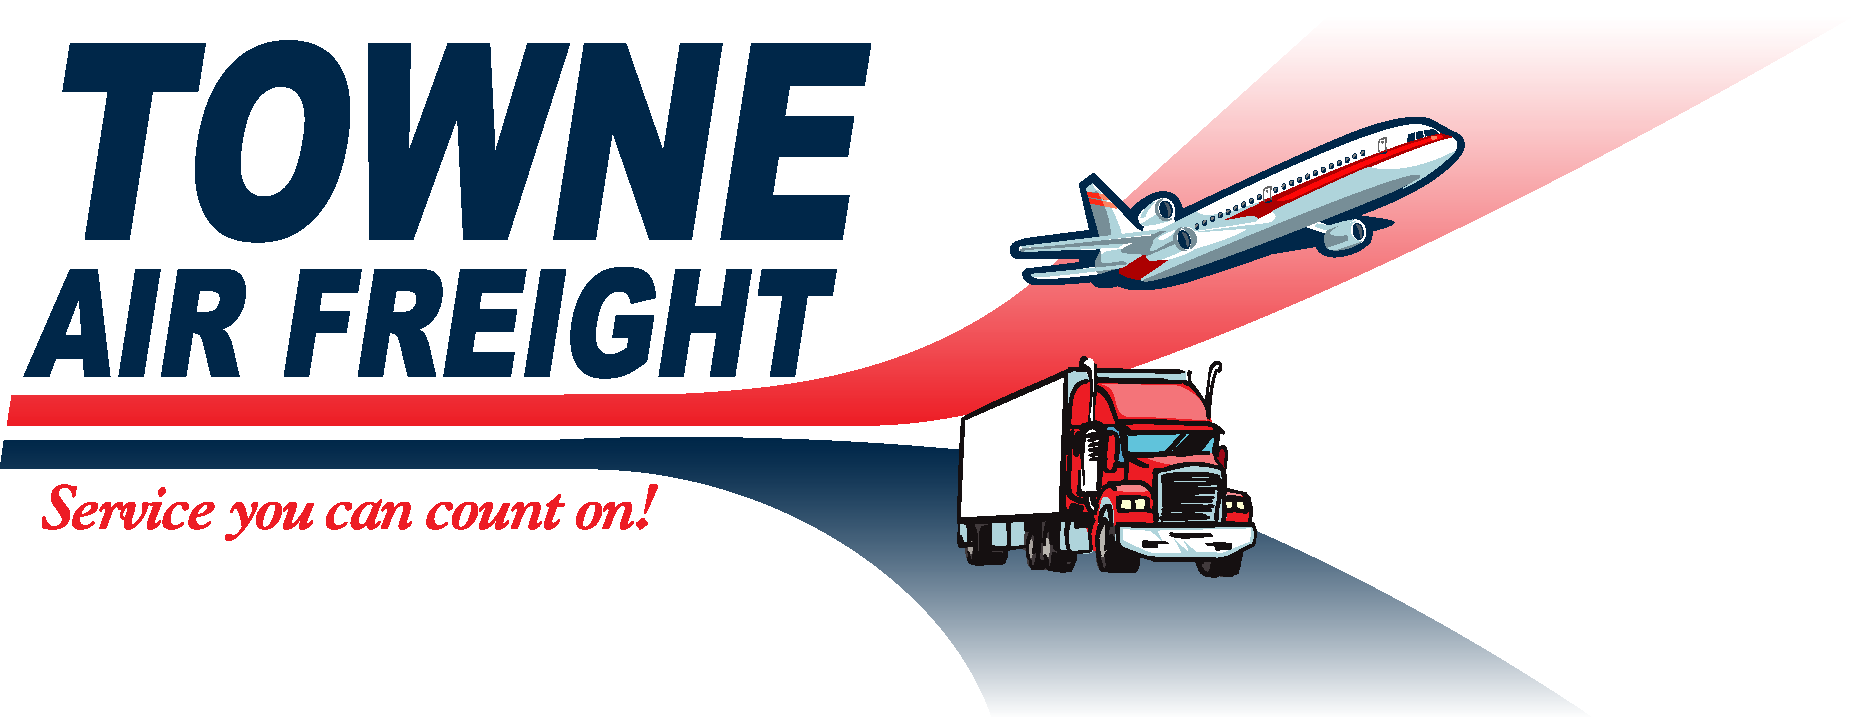 Towne Air Freight Logo Vector